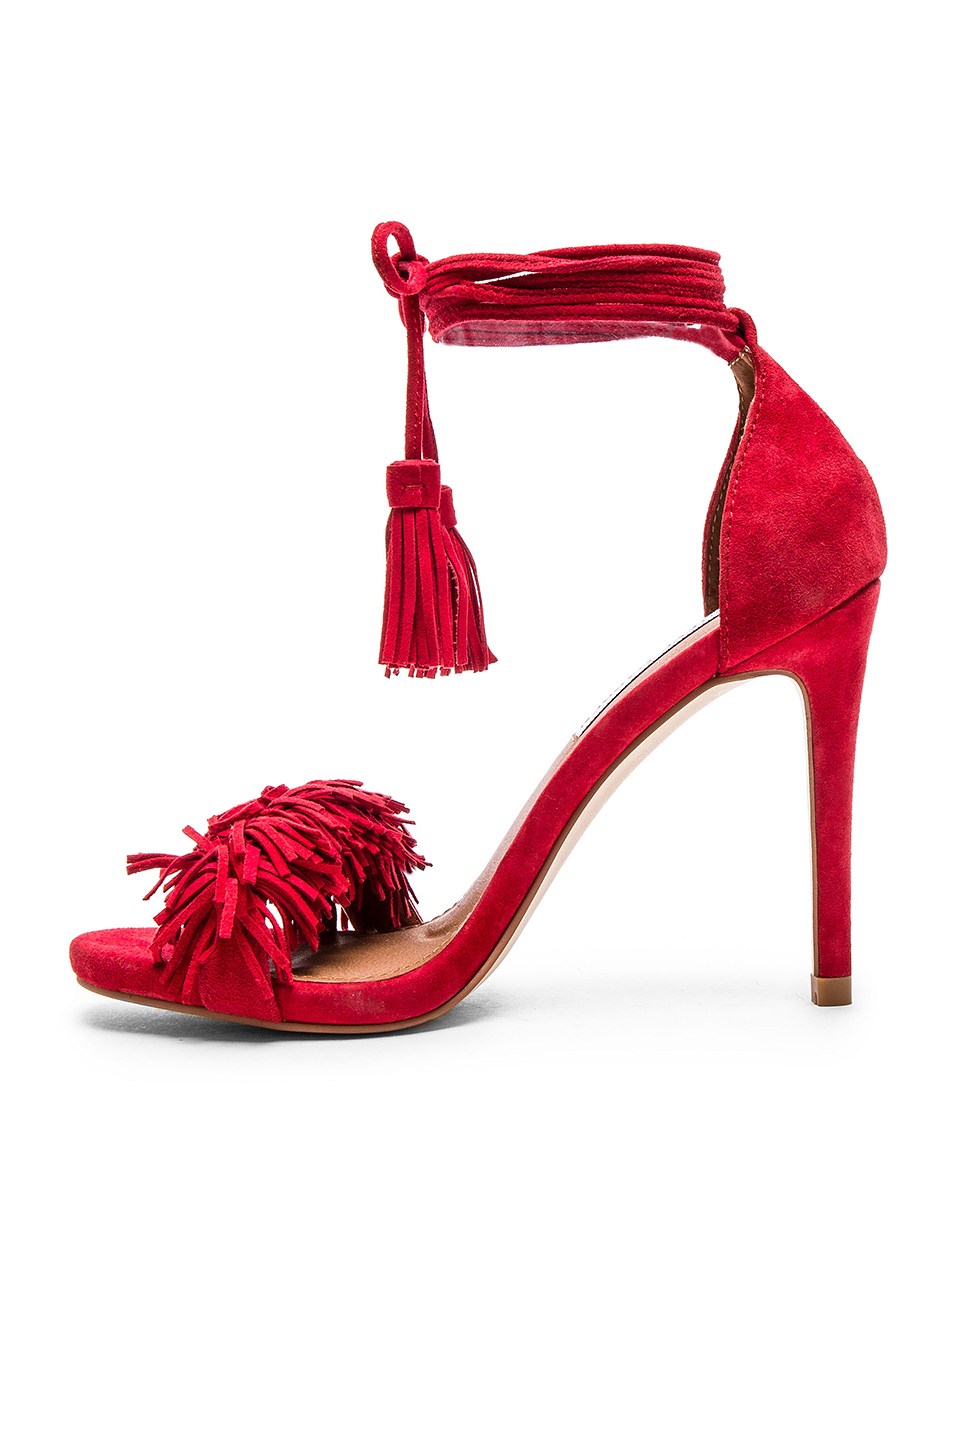 steve madden red fringe heels